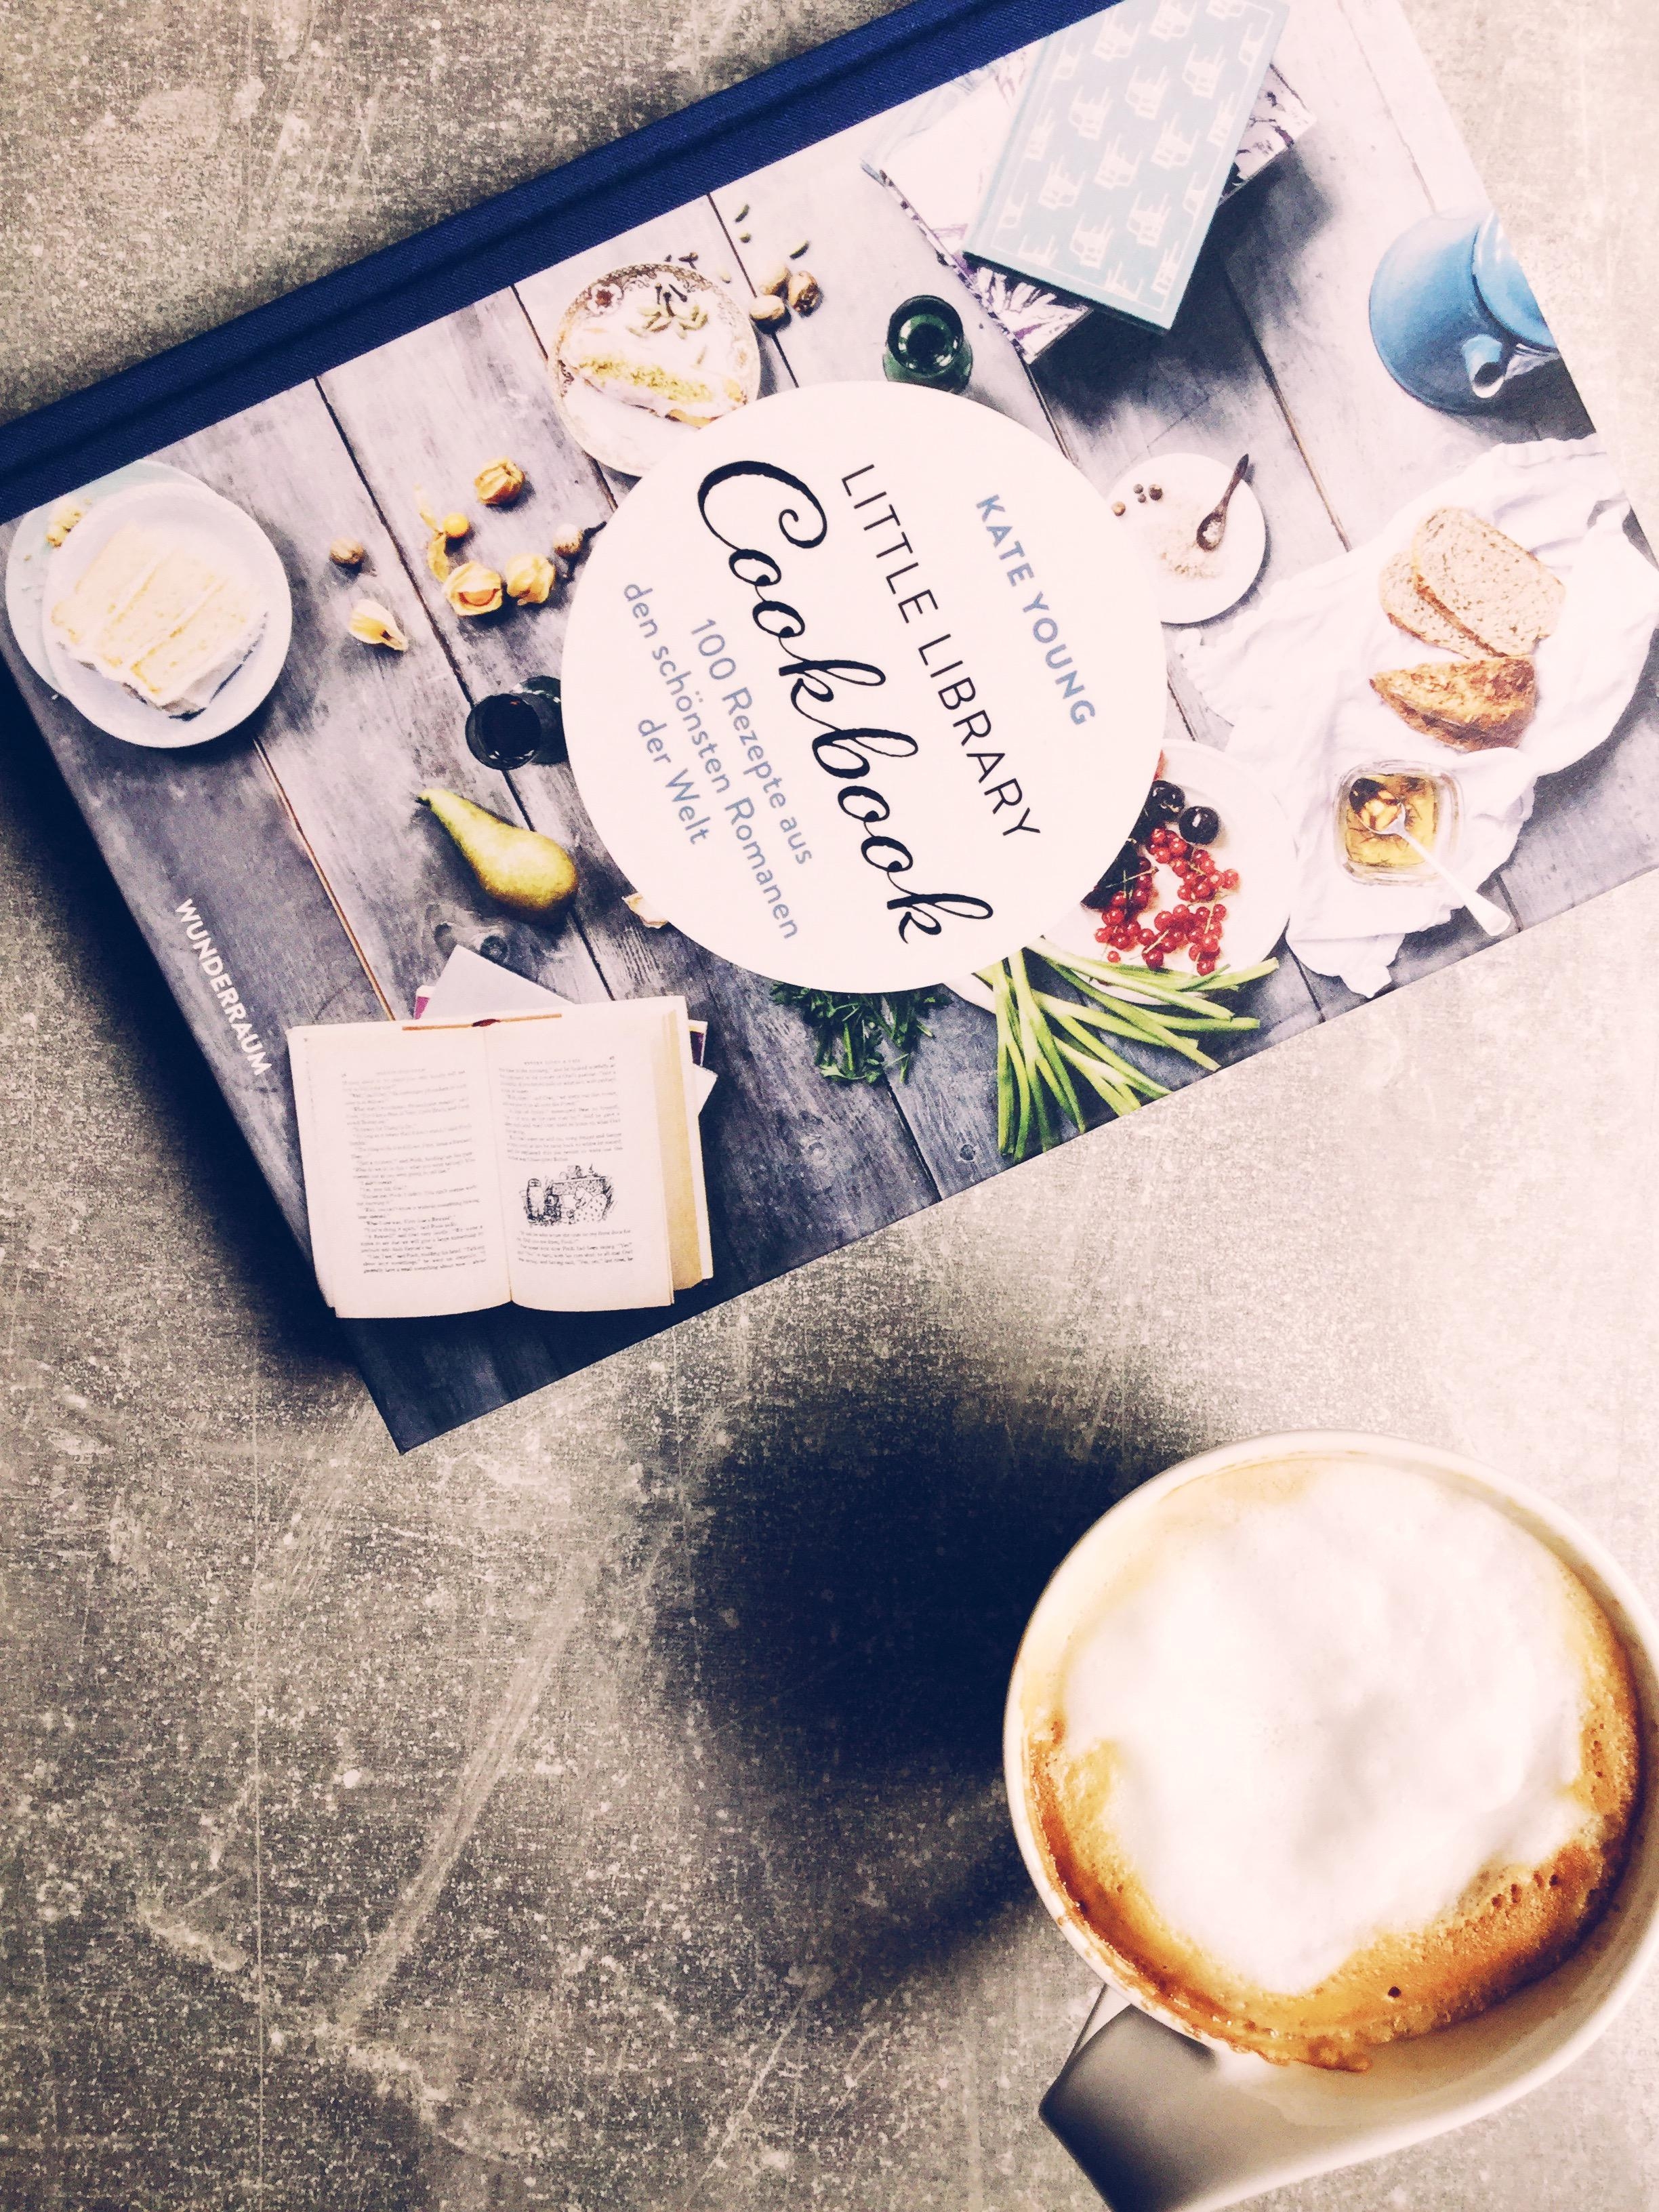 Ein köstlicher Kaffee und ein schönes Buch zur Inspiration ❤️ #coffeelover #foodchallenge 